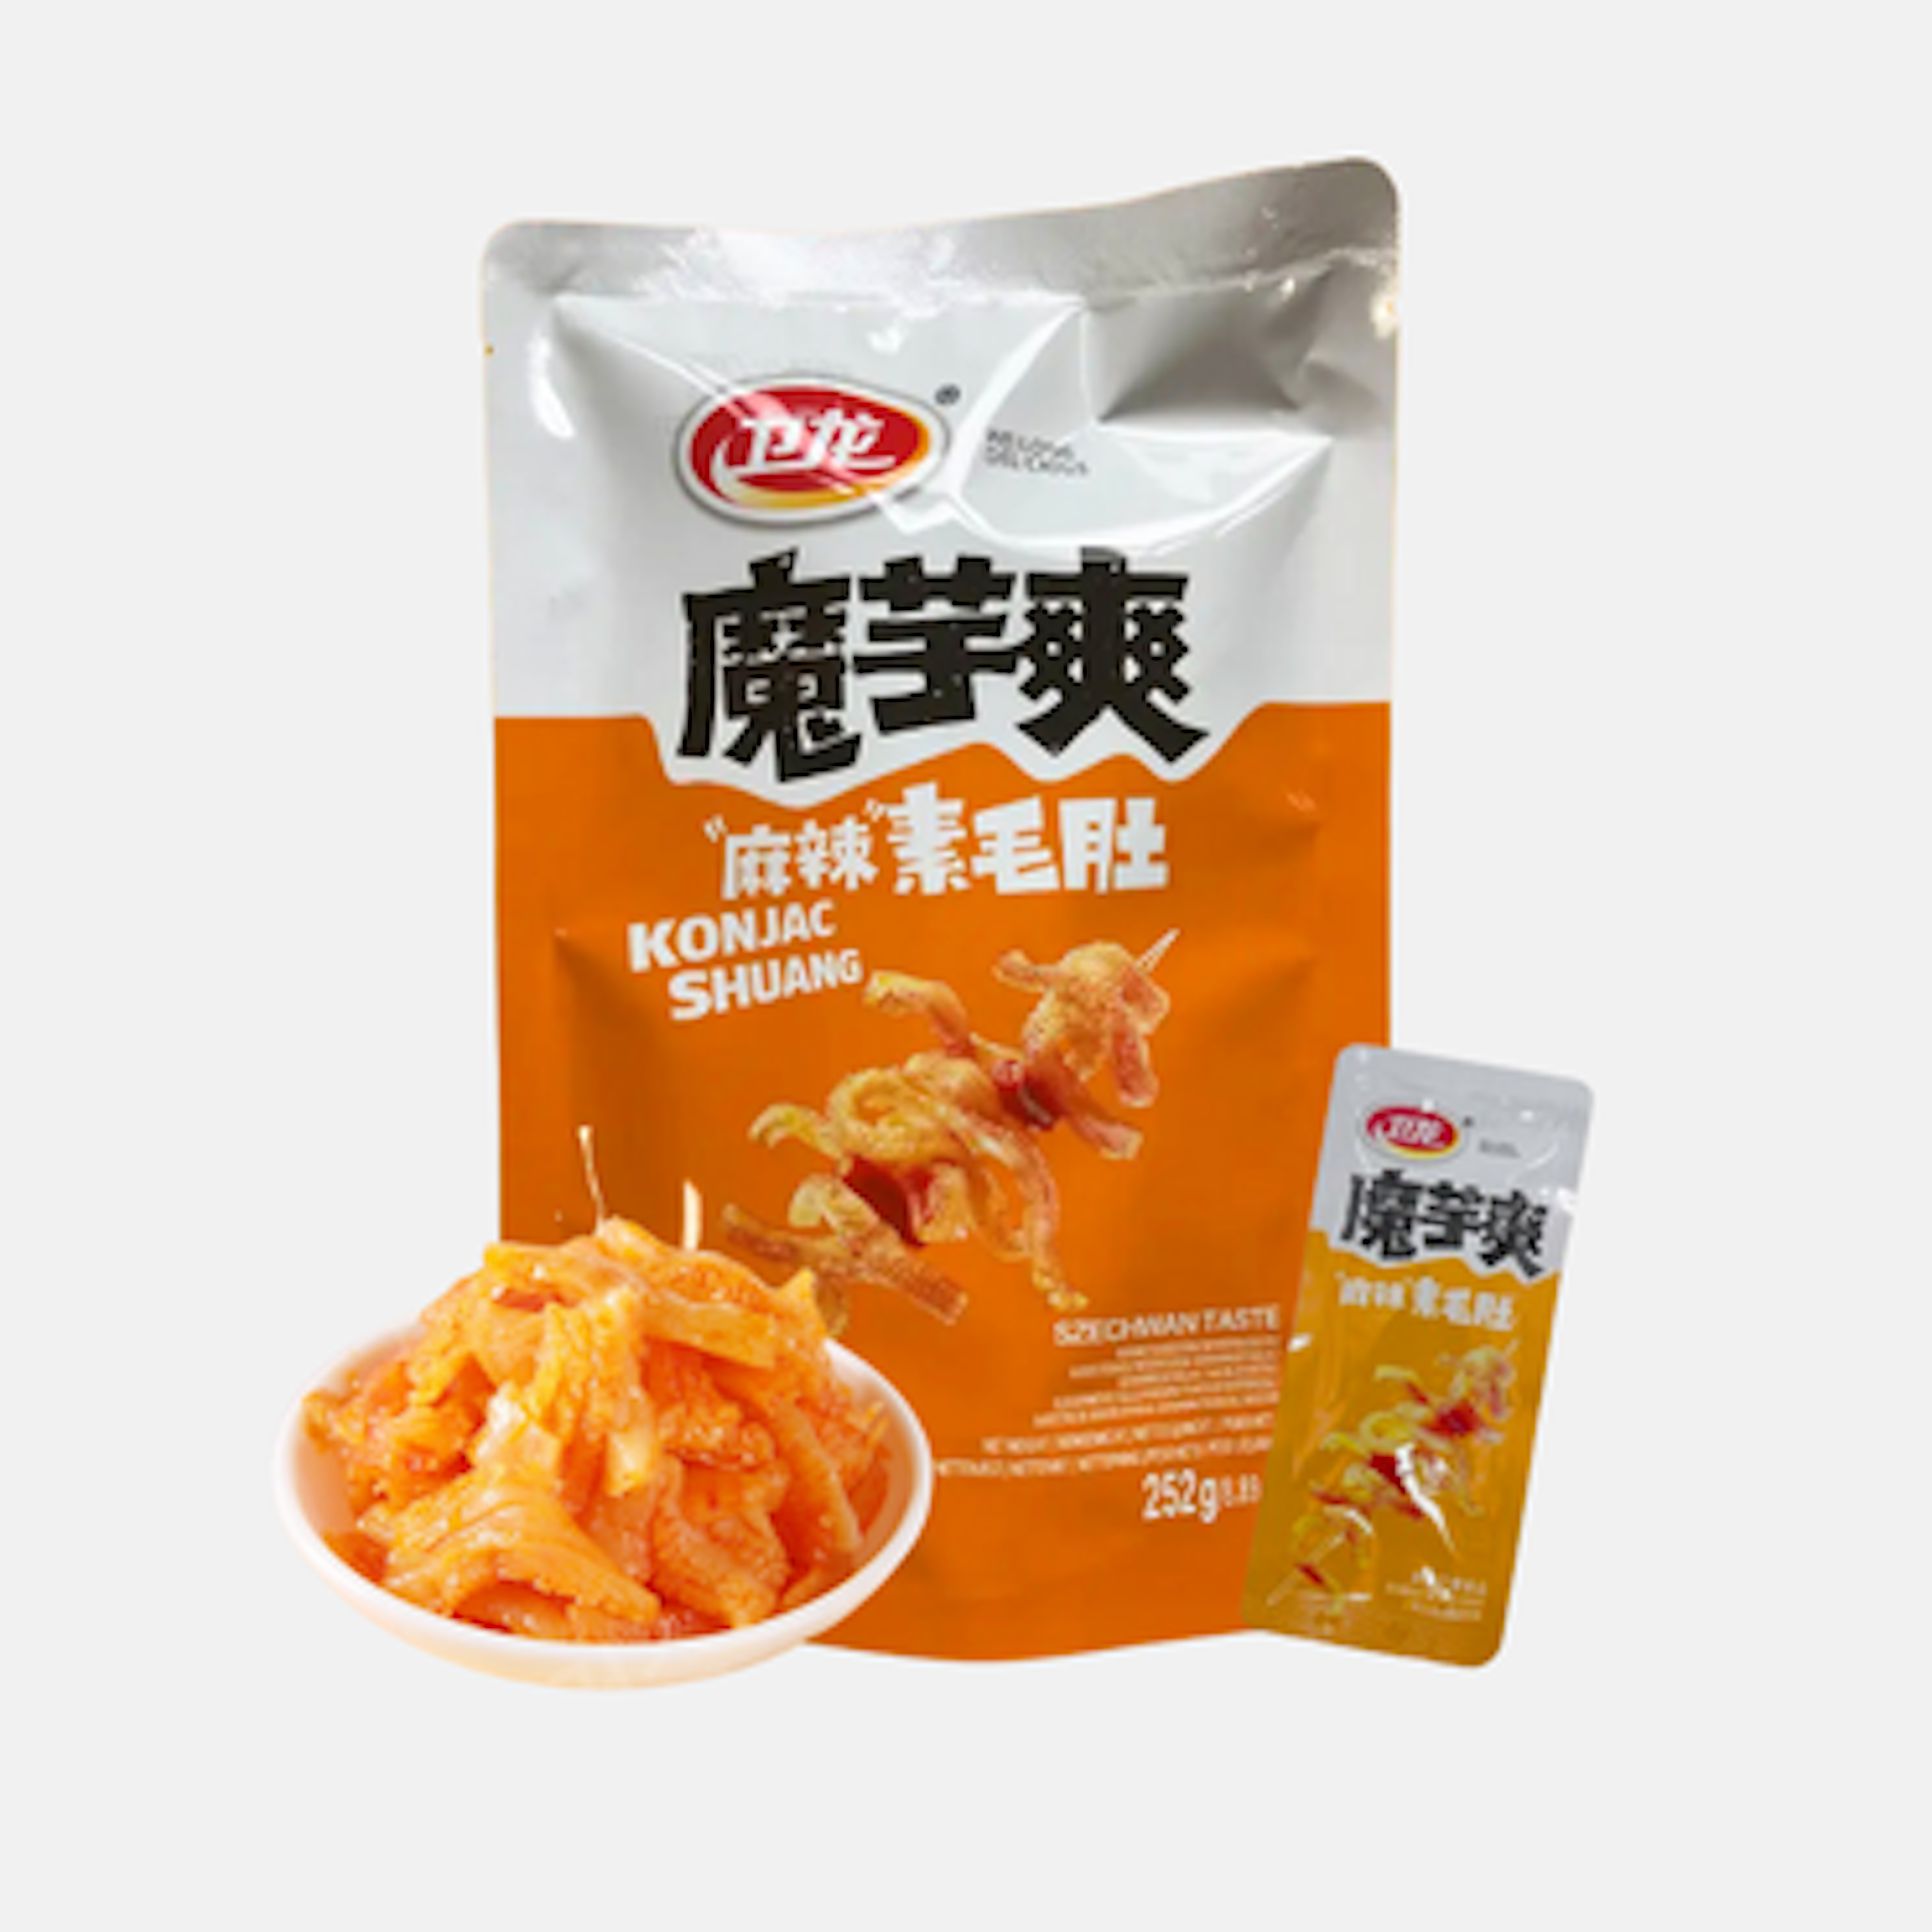 Wei Long Konjac Shuang Szechuan Taste - Kalorienarmer und würziger Konjak-Snack, 252g